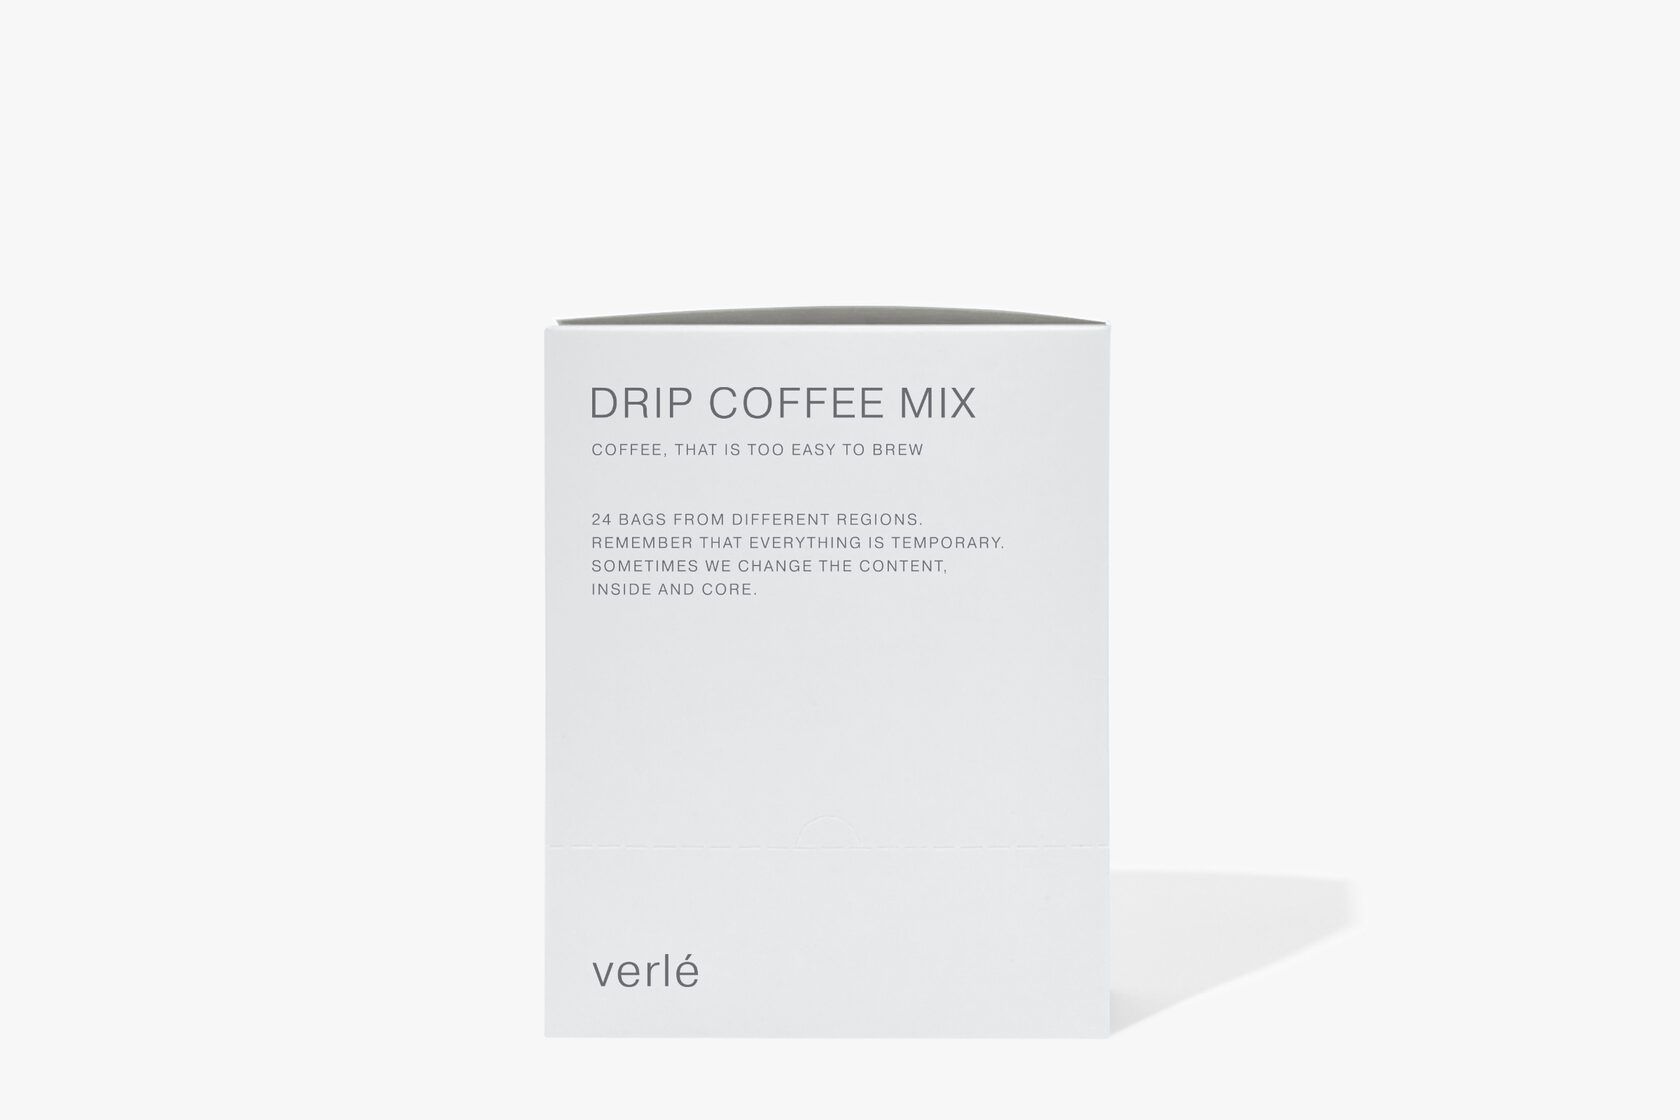 Дрип кофе молотый Verle MIX Big Box, 24 дрип-пакета по 11 г - фотография № 3